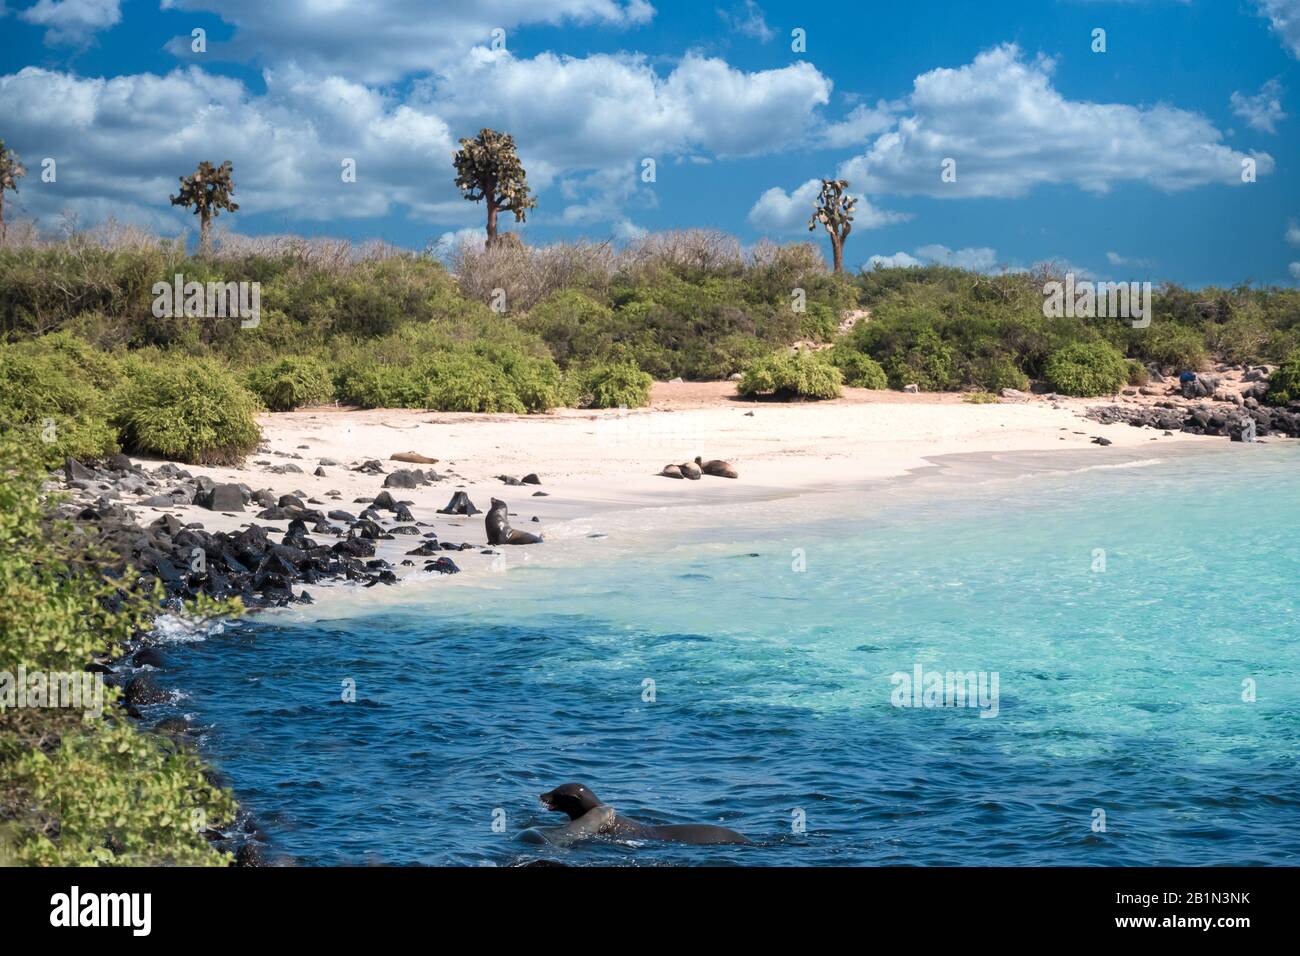 Paysages côtiers primitifs sur l'île de Santa Fe, avec des otaries, des iguanes et des groupes d'alcool marins, des îles Galapagos, Équateur Banque D'Images